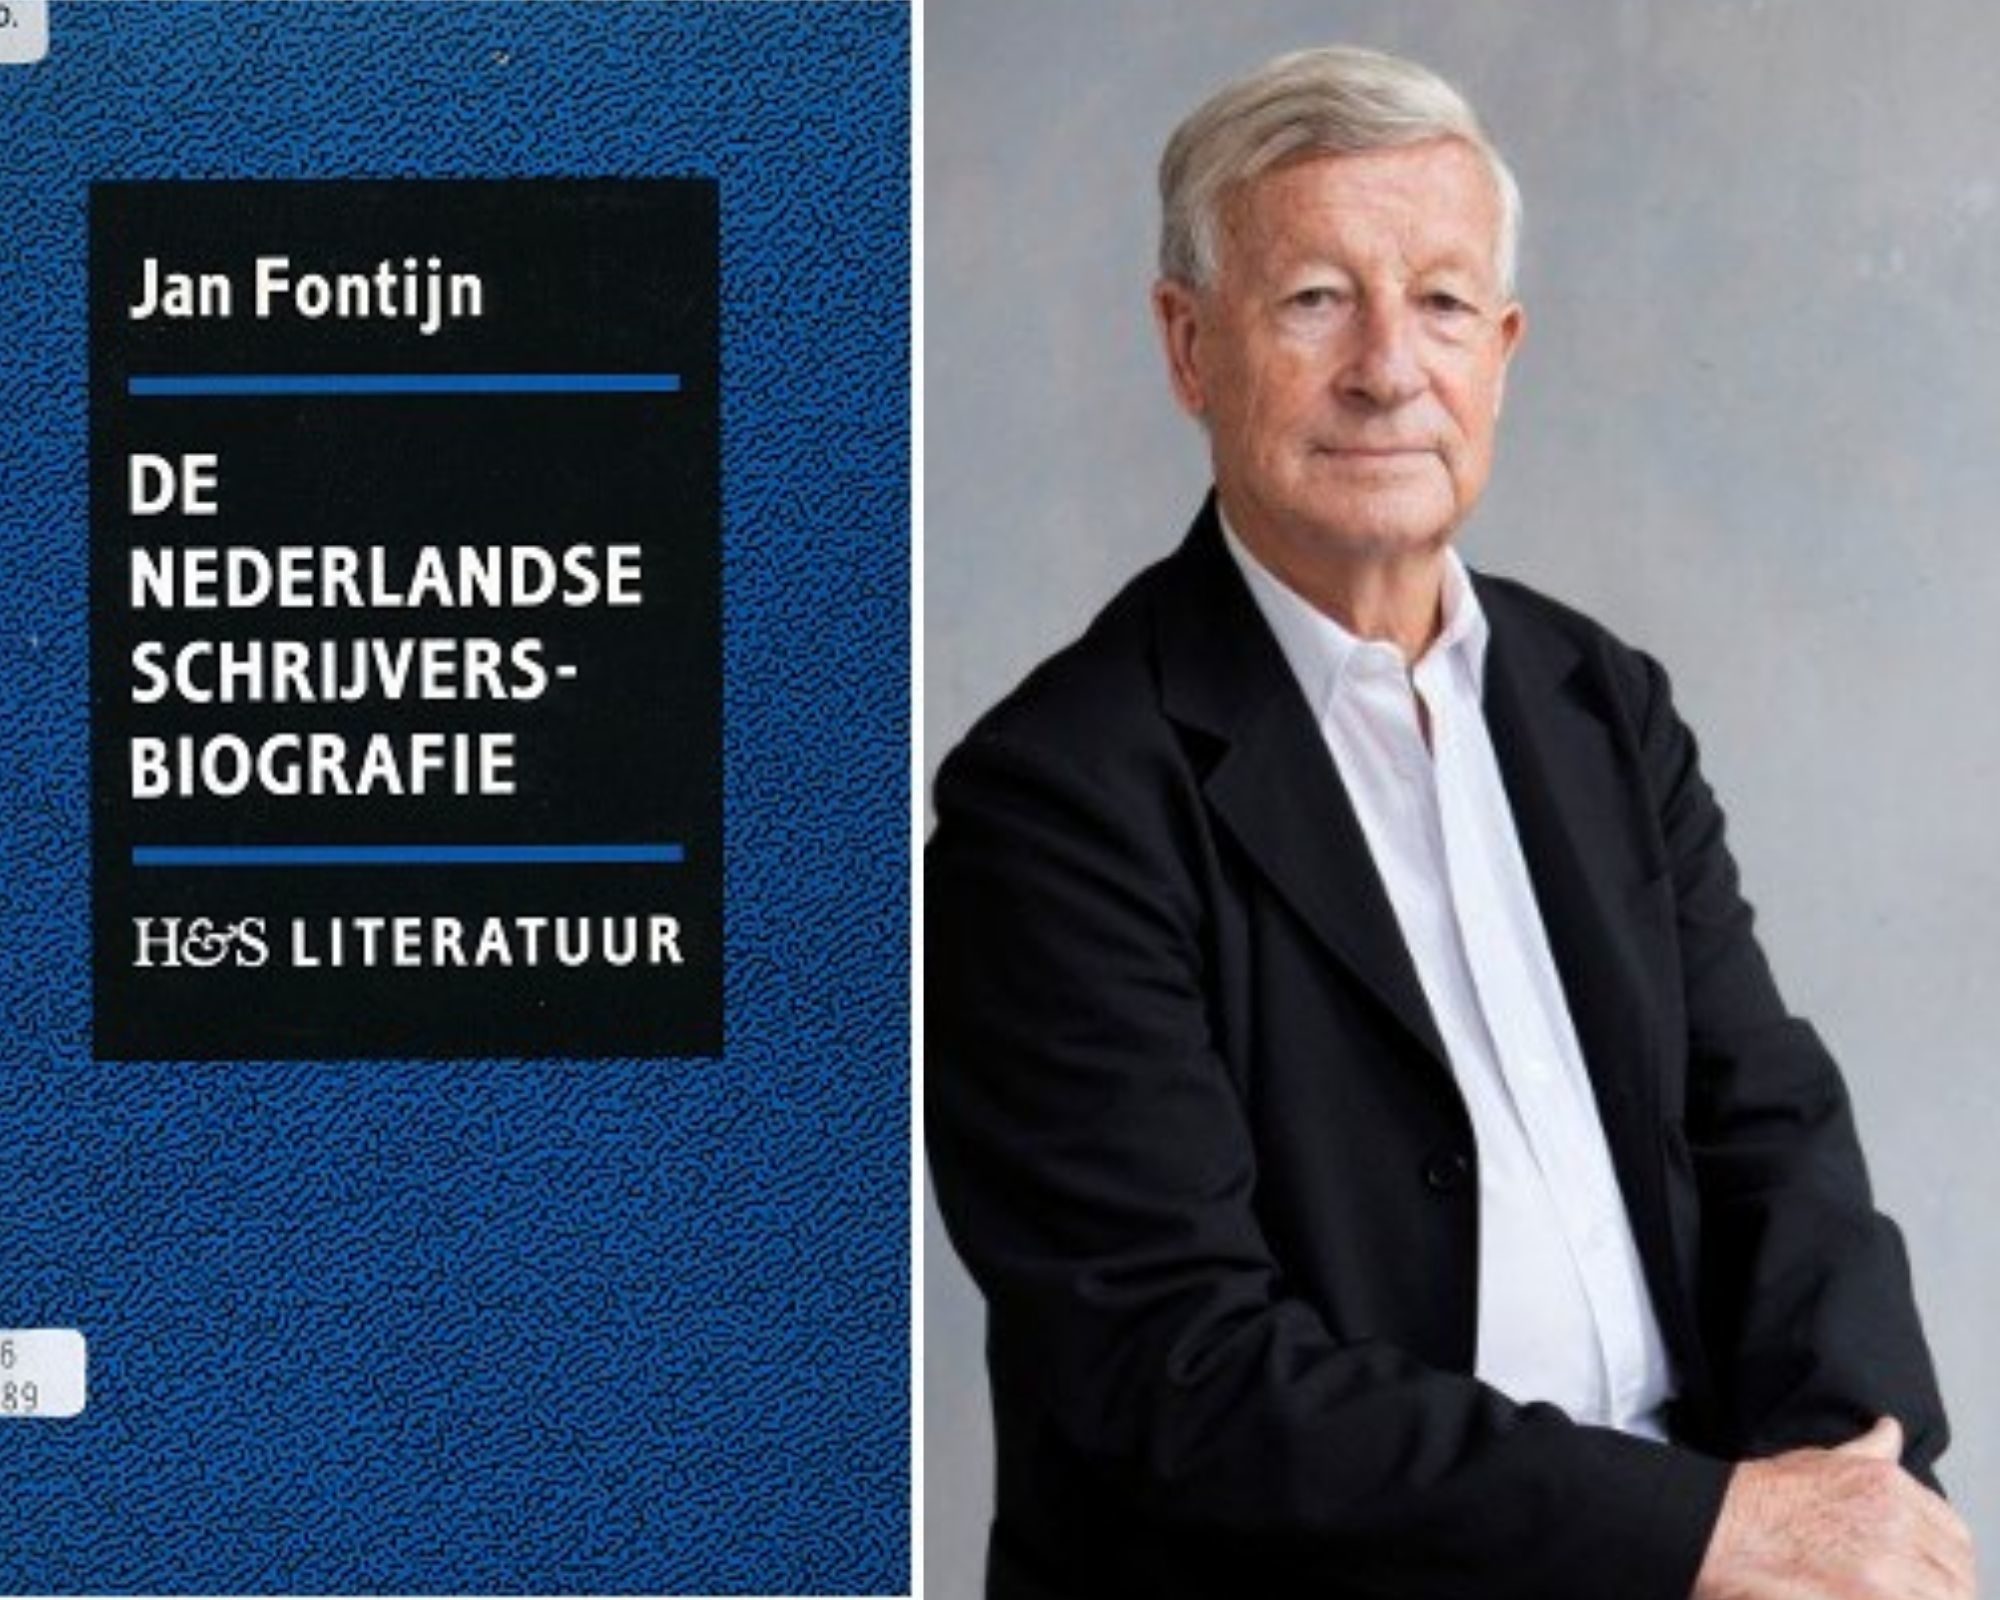 Jan Fontijn met De Nederlandse schrijversbiografie